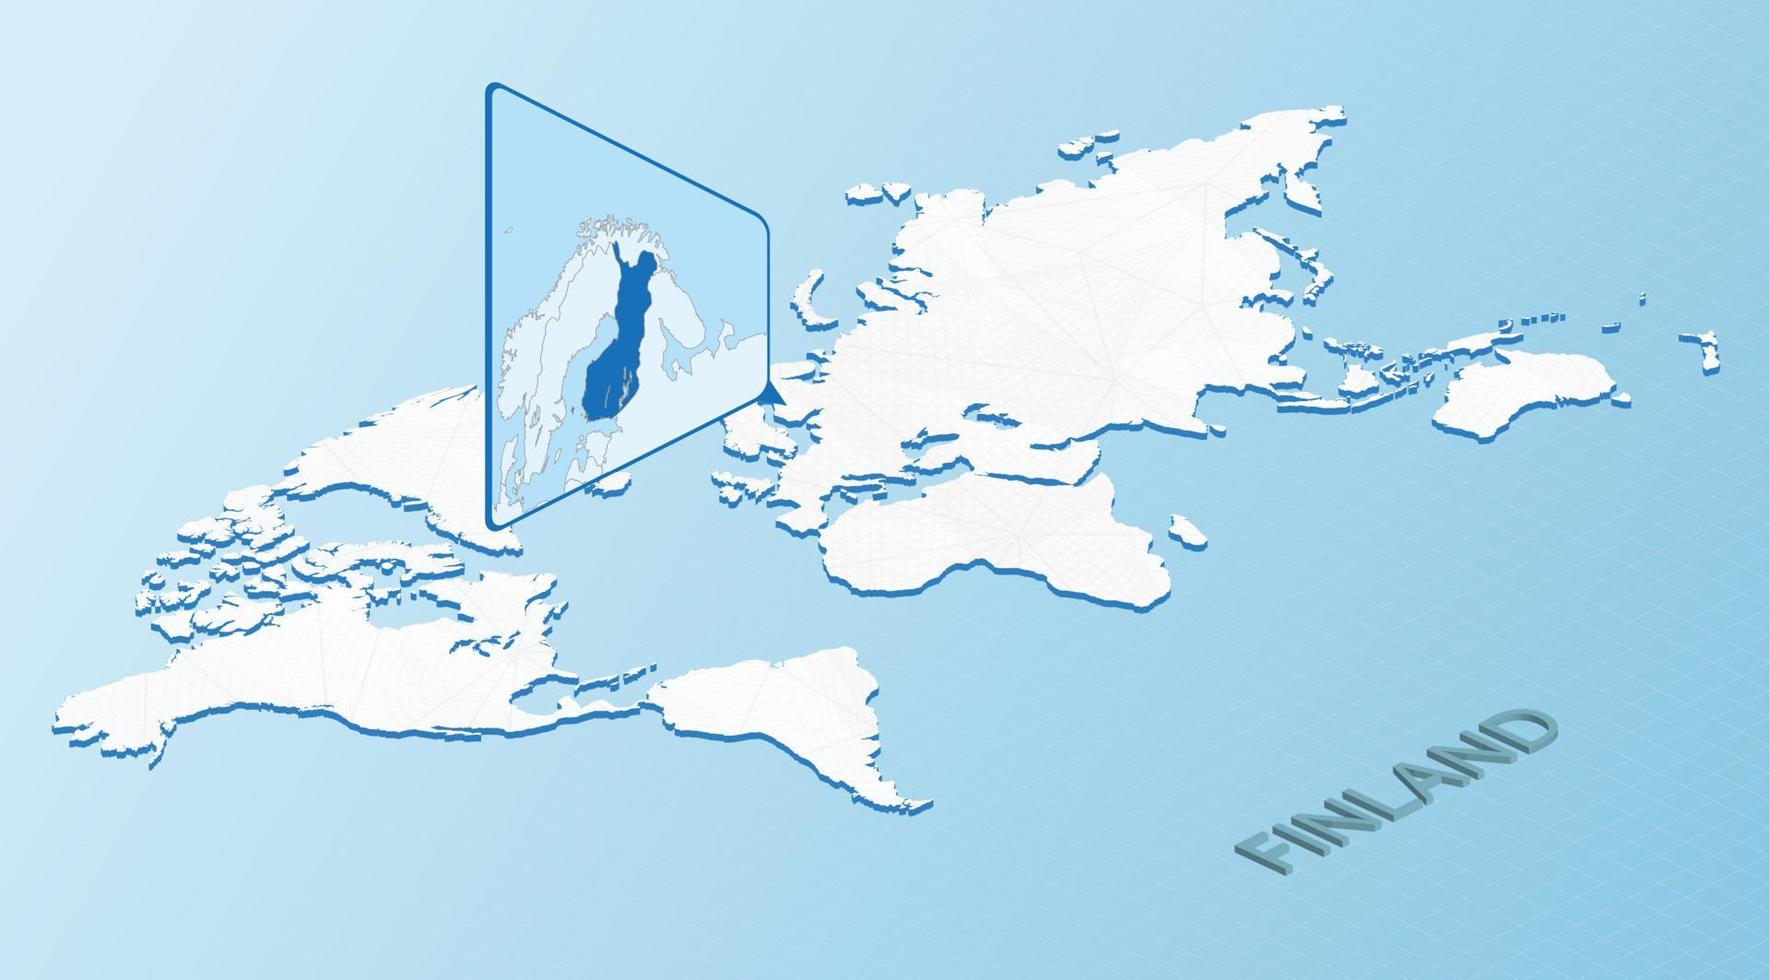 wereld kaart in isometrische stijl met gedetailleerd kaart van Finland. licht blauw Finland kaart met abstract wereld kaart. vector